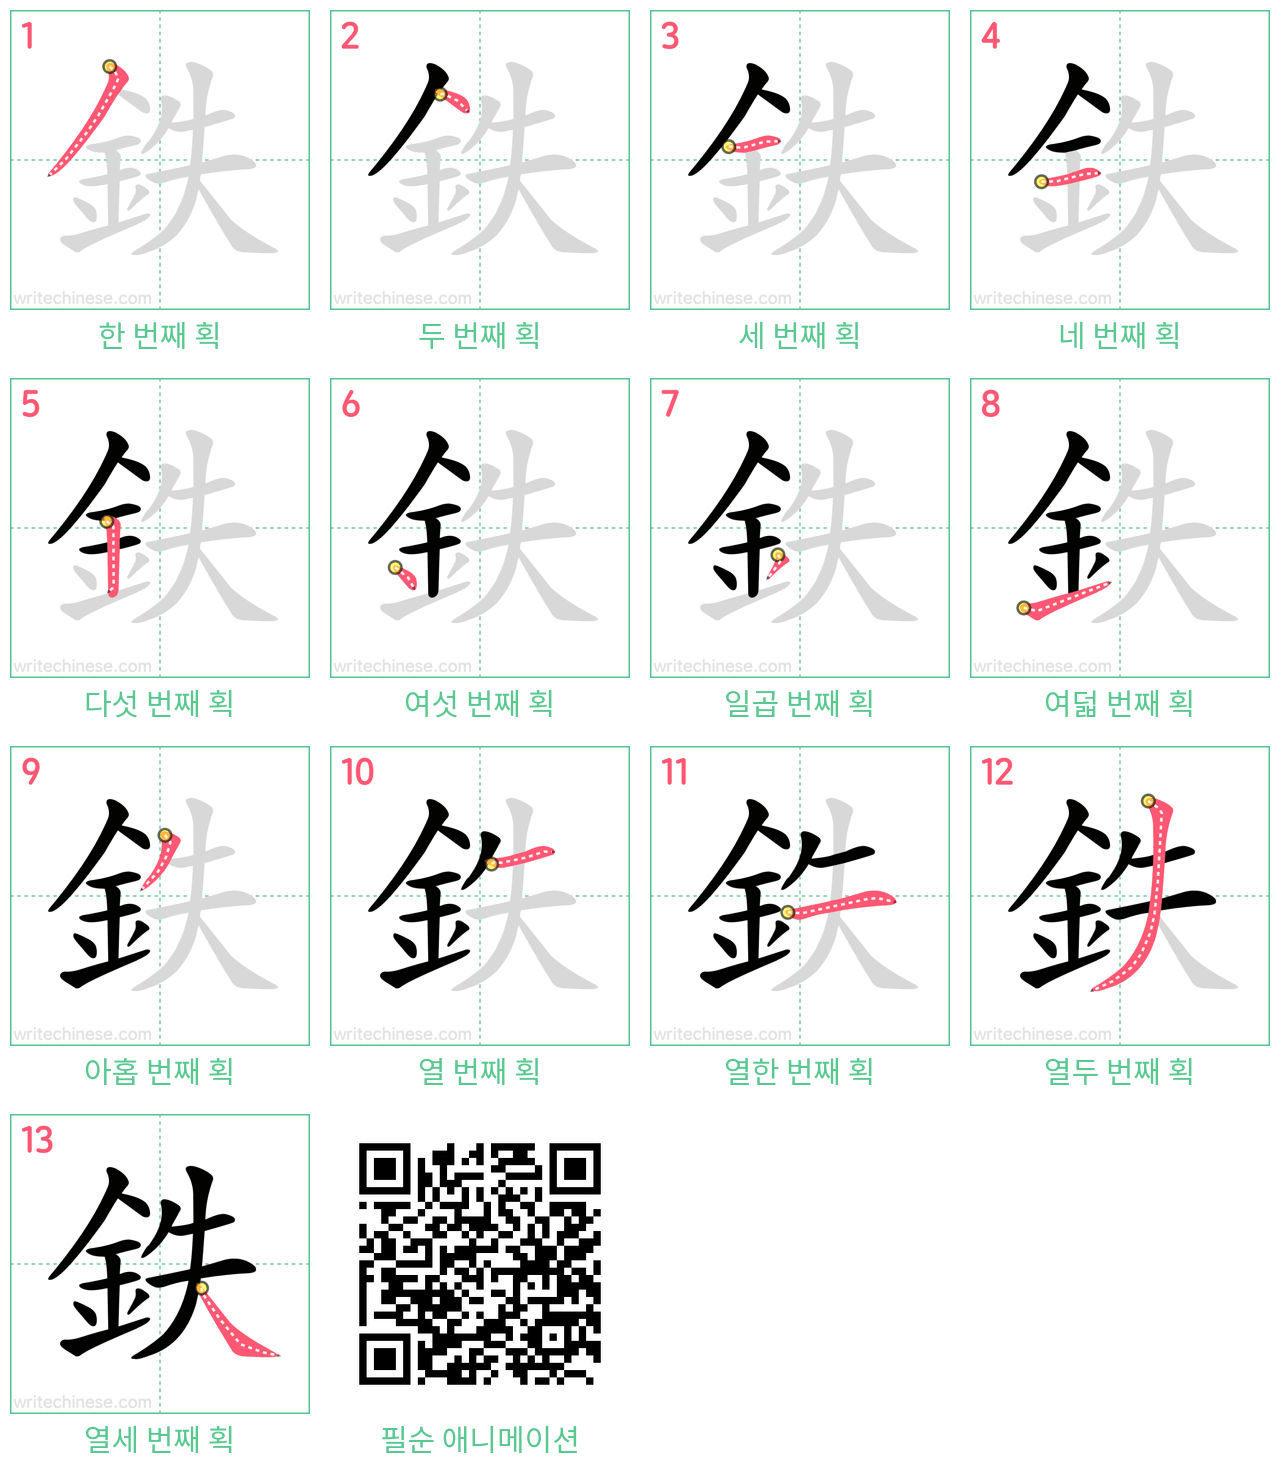 鉄 step-by-step stroke order diagrams